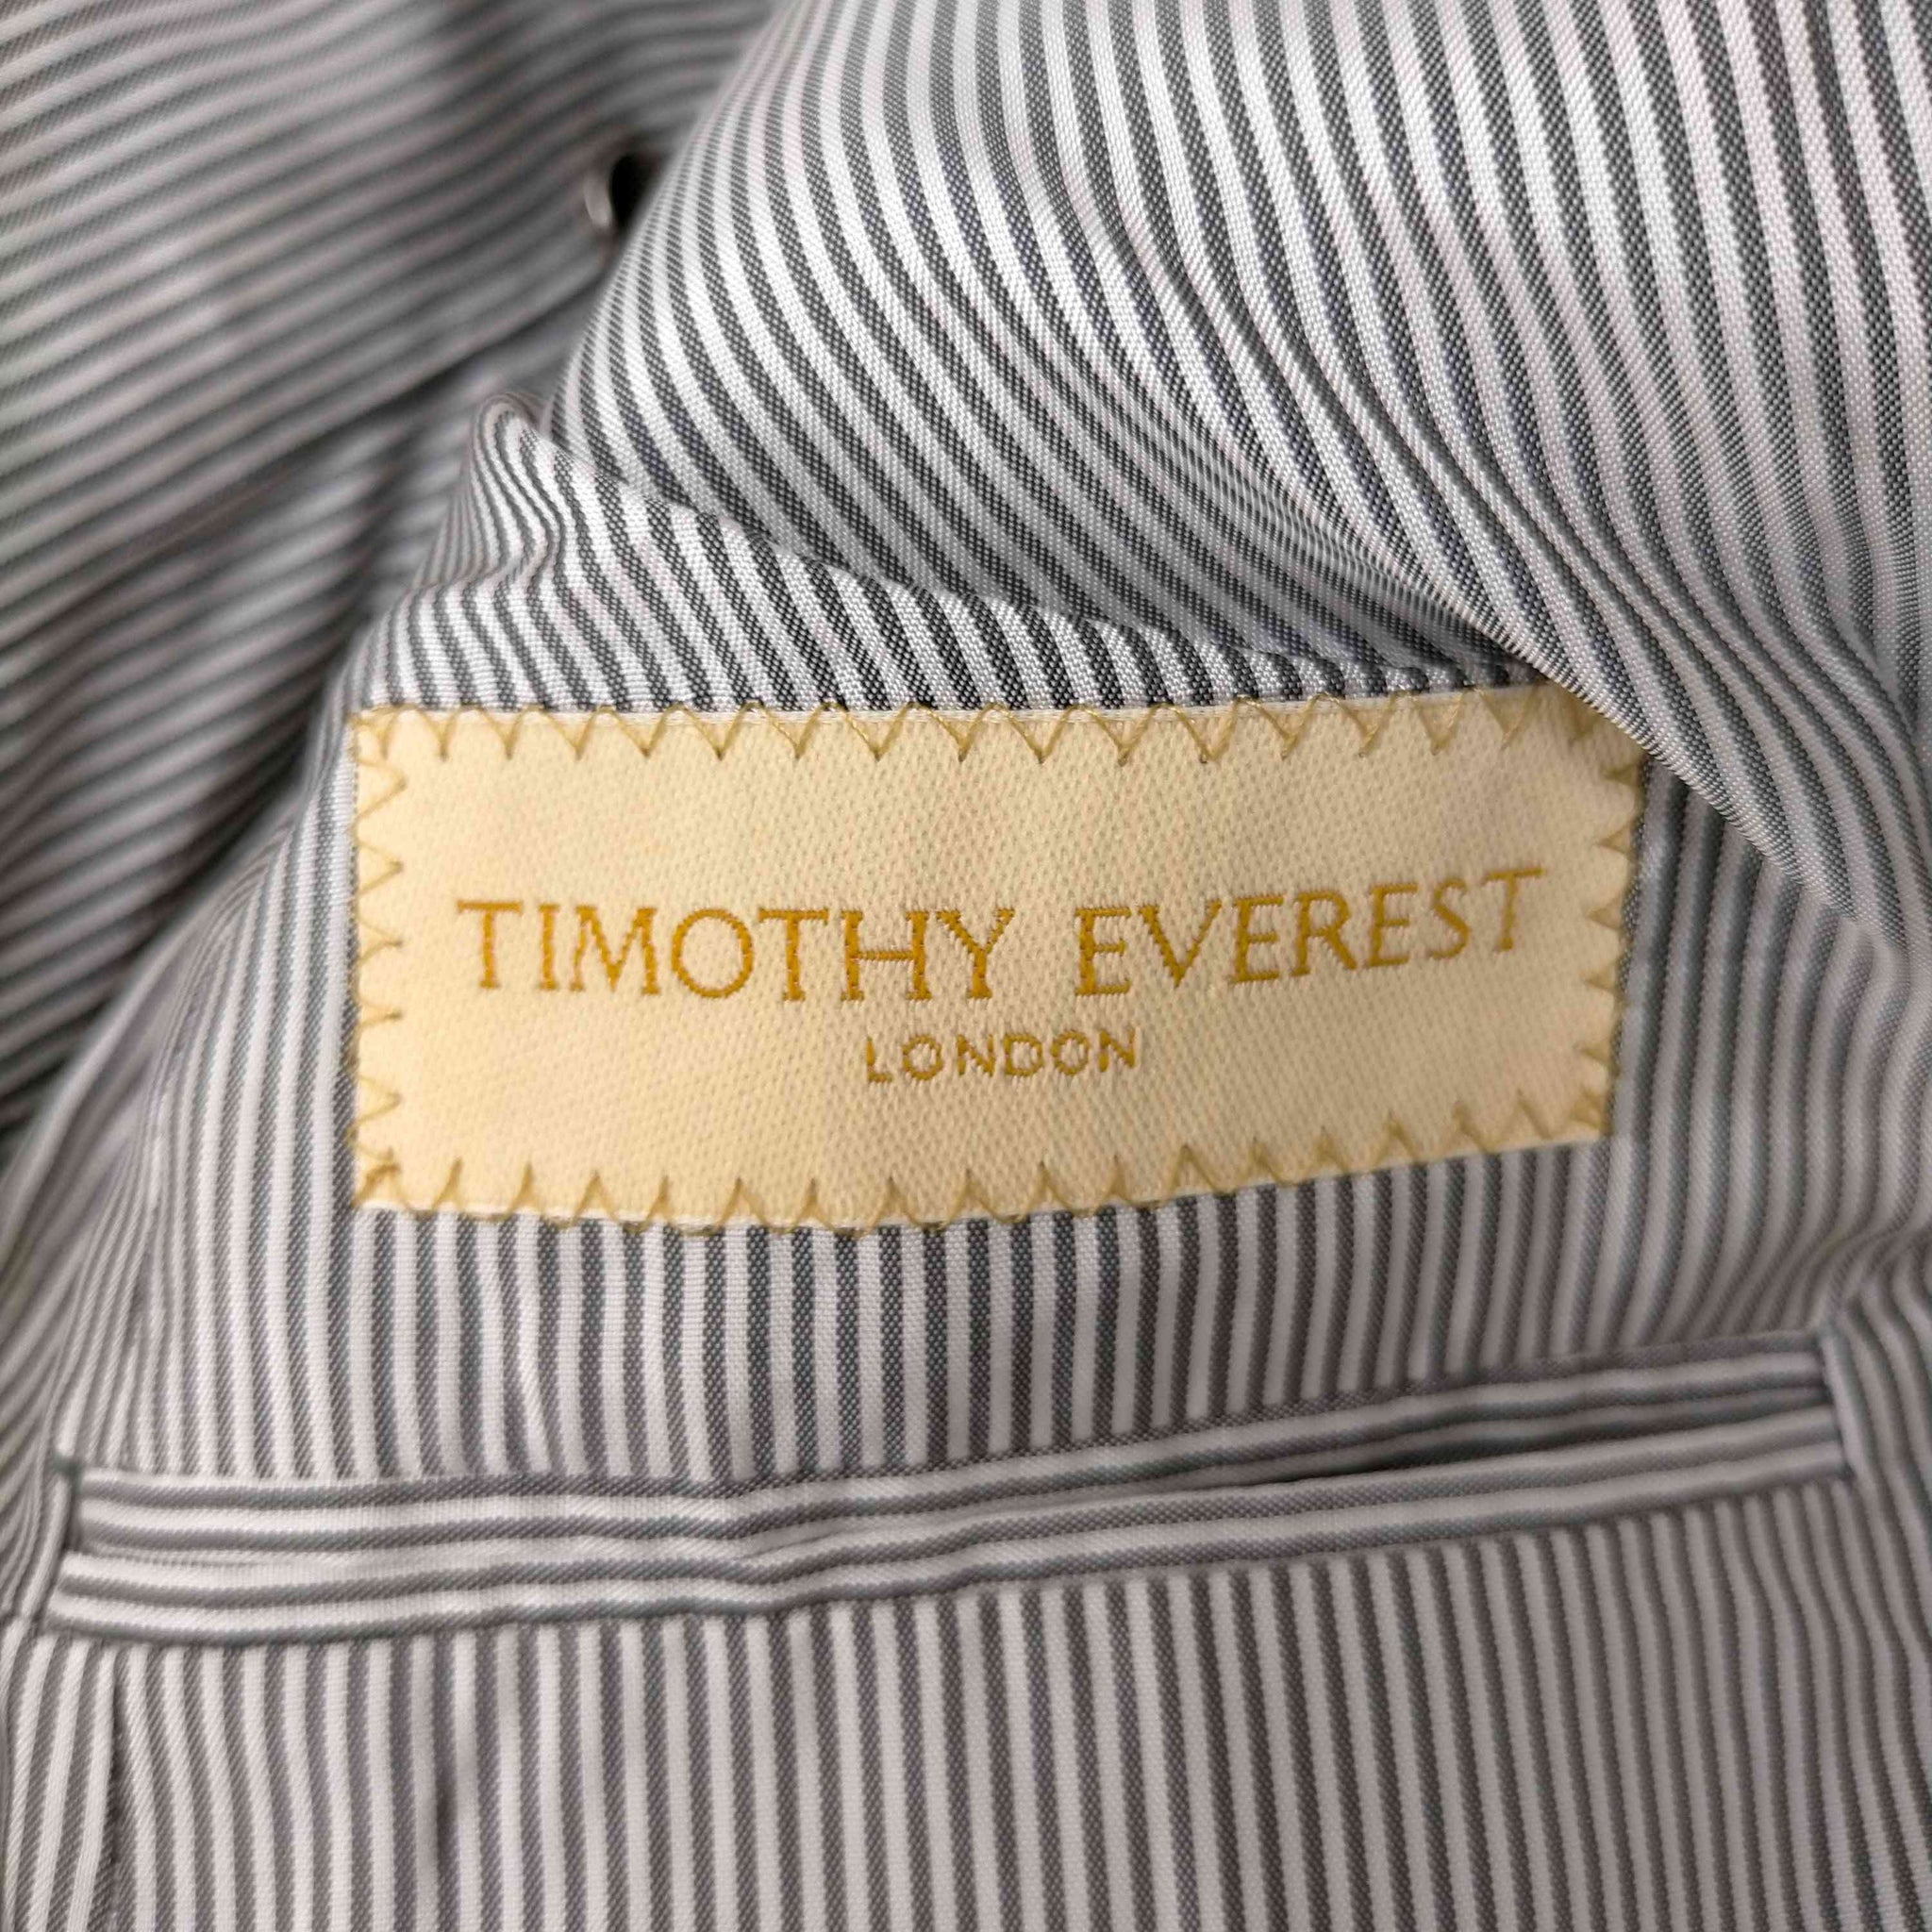 timothy everest(ティモシーエヴェレスト)ウールヘリンボーンセットアップ